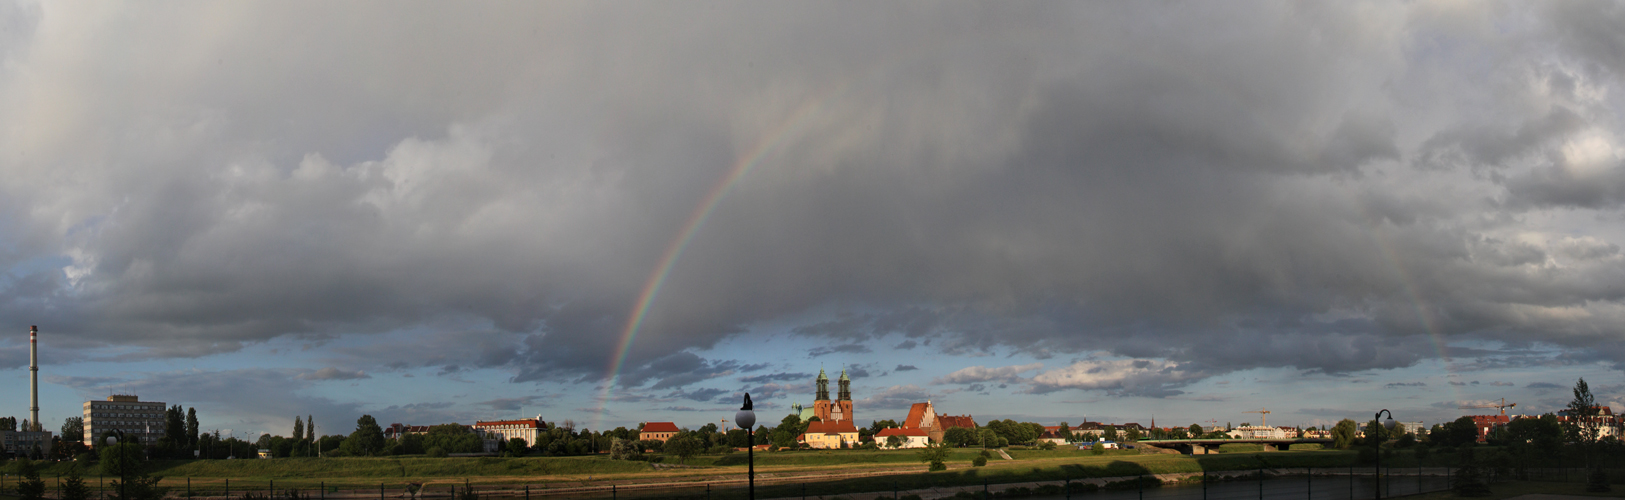 Panorama mit Regenbogen ....